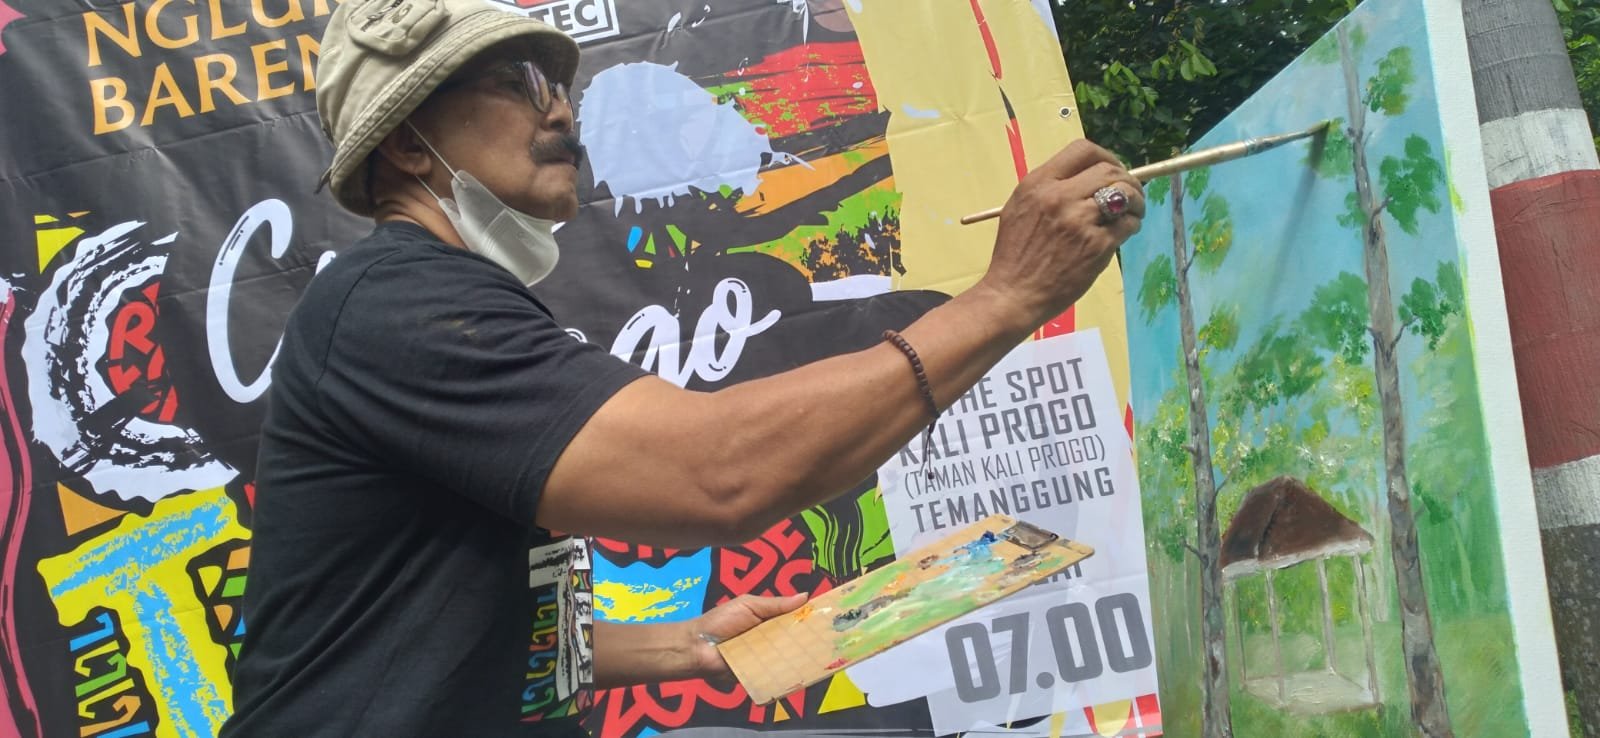 MELUKIS. Para seniman yang tergabung dalam Komunitas Catec tengah serius melukis di atas media kanvas dalam acara “Nglukis Bareng” bertema “Crito Progo” di area Taman Kali Progo, Kecamatan Kranggan, Temanggung.(Foto: rizal ifan chanaris.)